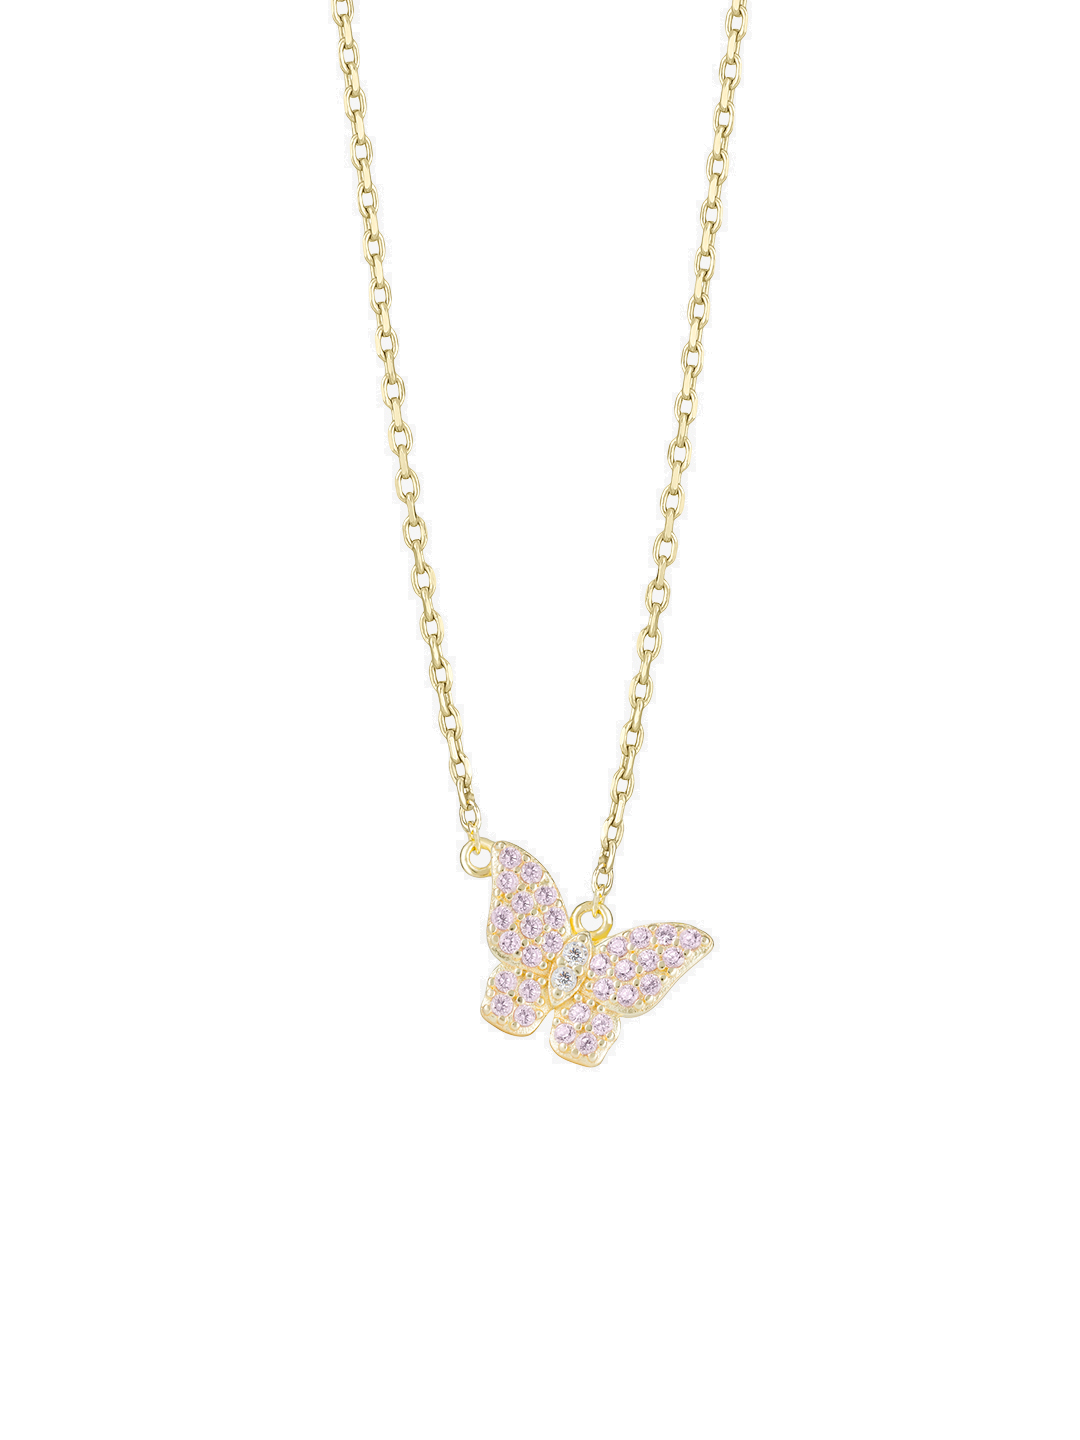 Preciosa Půvabný pozlacený náhrdelník s kubickými zirkony Candy Floss 5400Y69